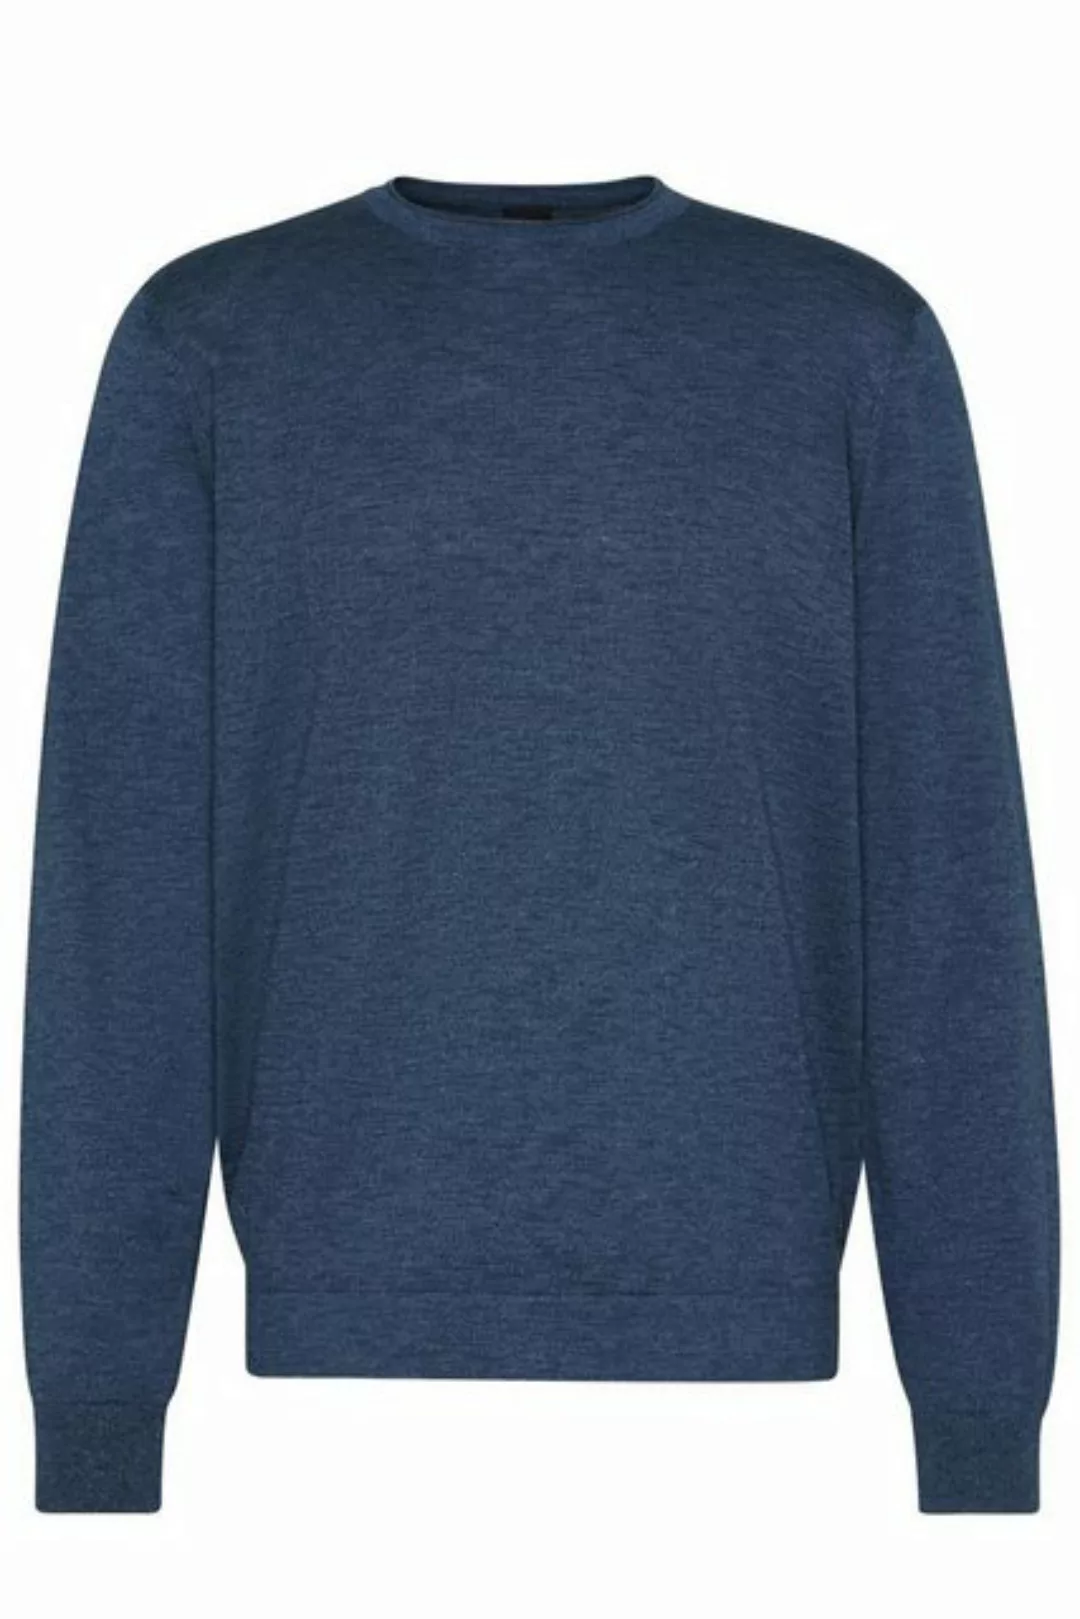 bugatti Sweatshirt HERREN PULLOVER 1/1 ARM, marine günstig online kaufen